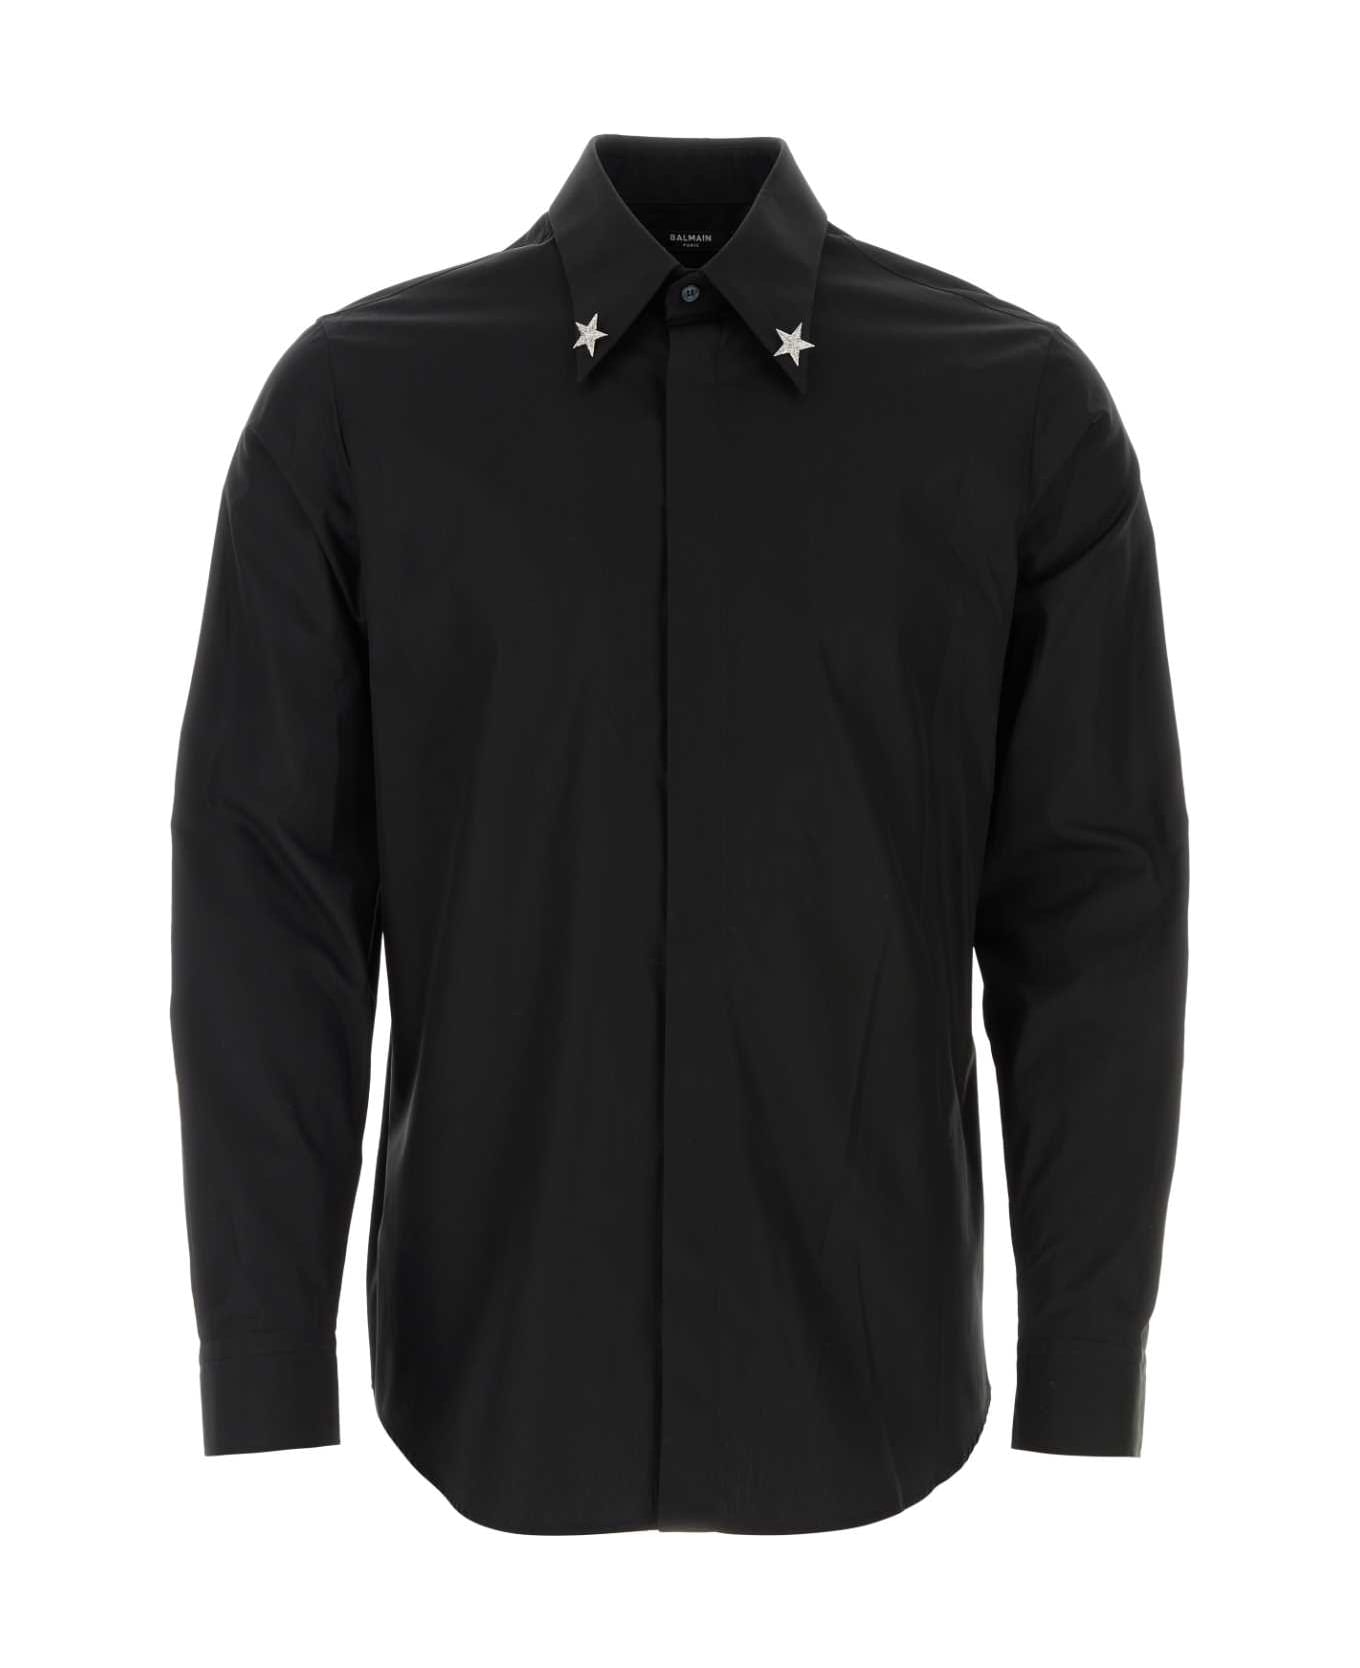 Balmain Black Poplin Shirt - 0PANOIR